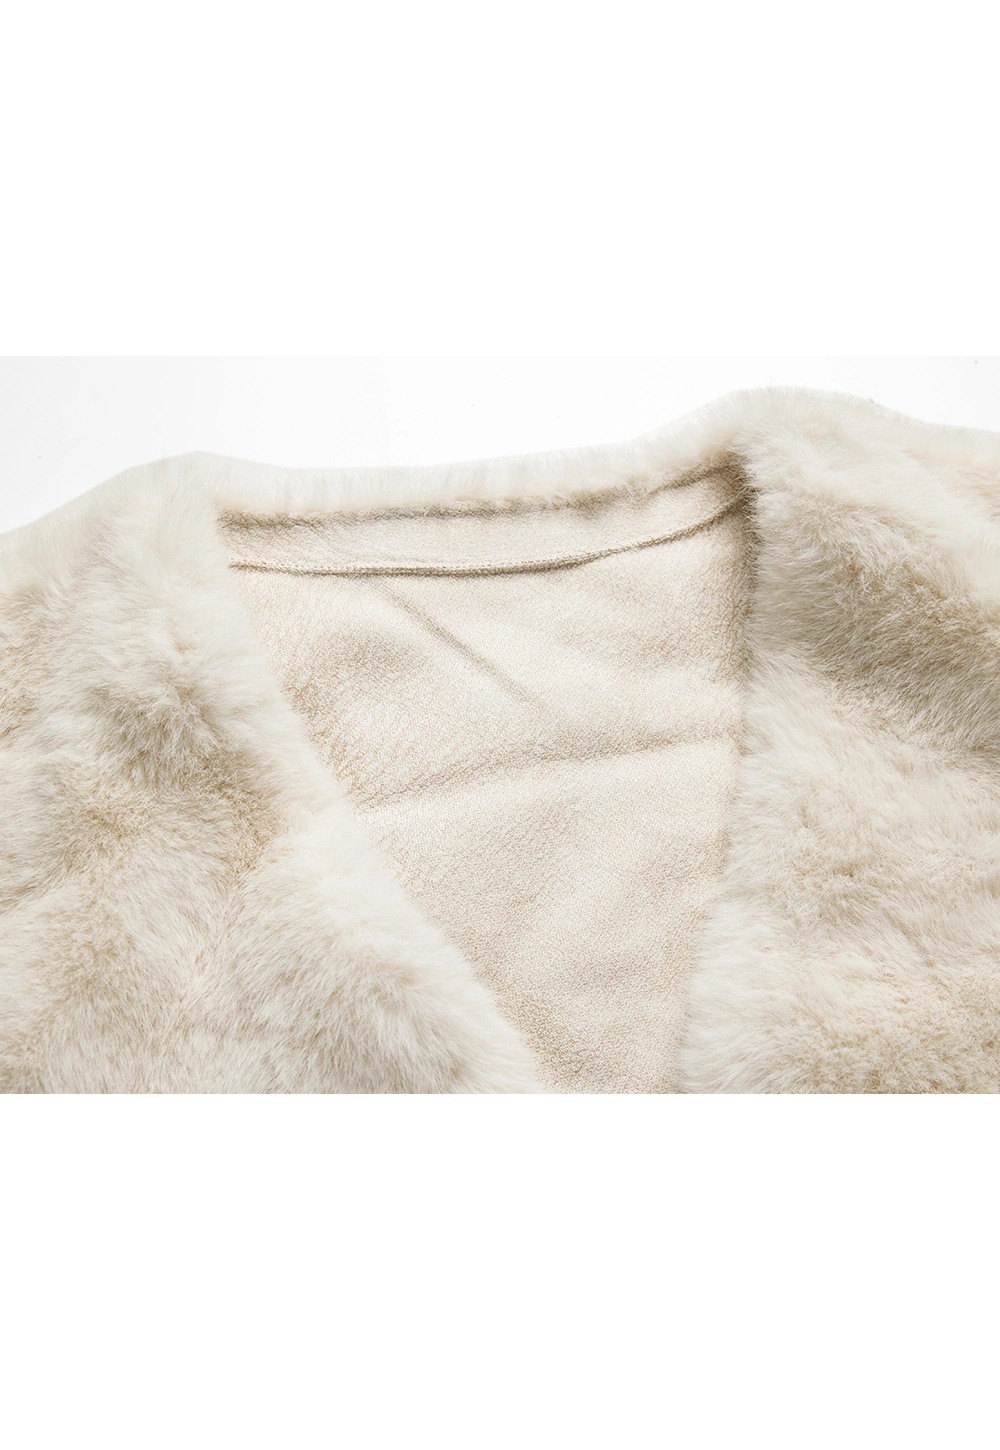 Women's Faux Fur Jacket - Cream, Long Sleeve, Open Front